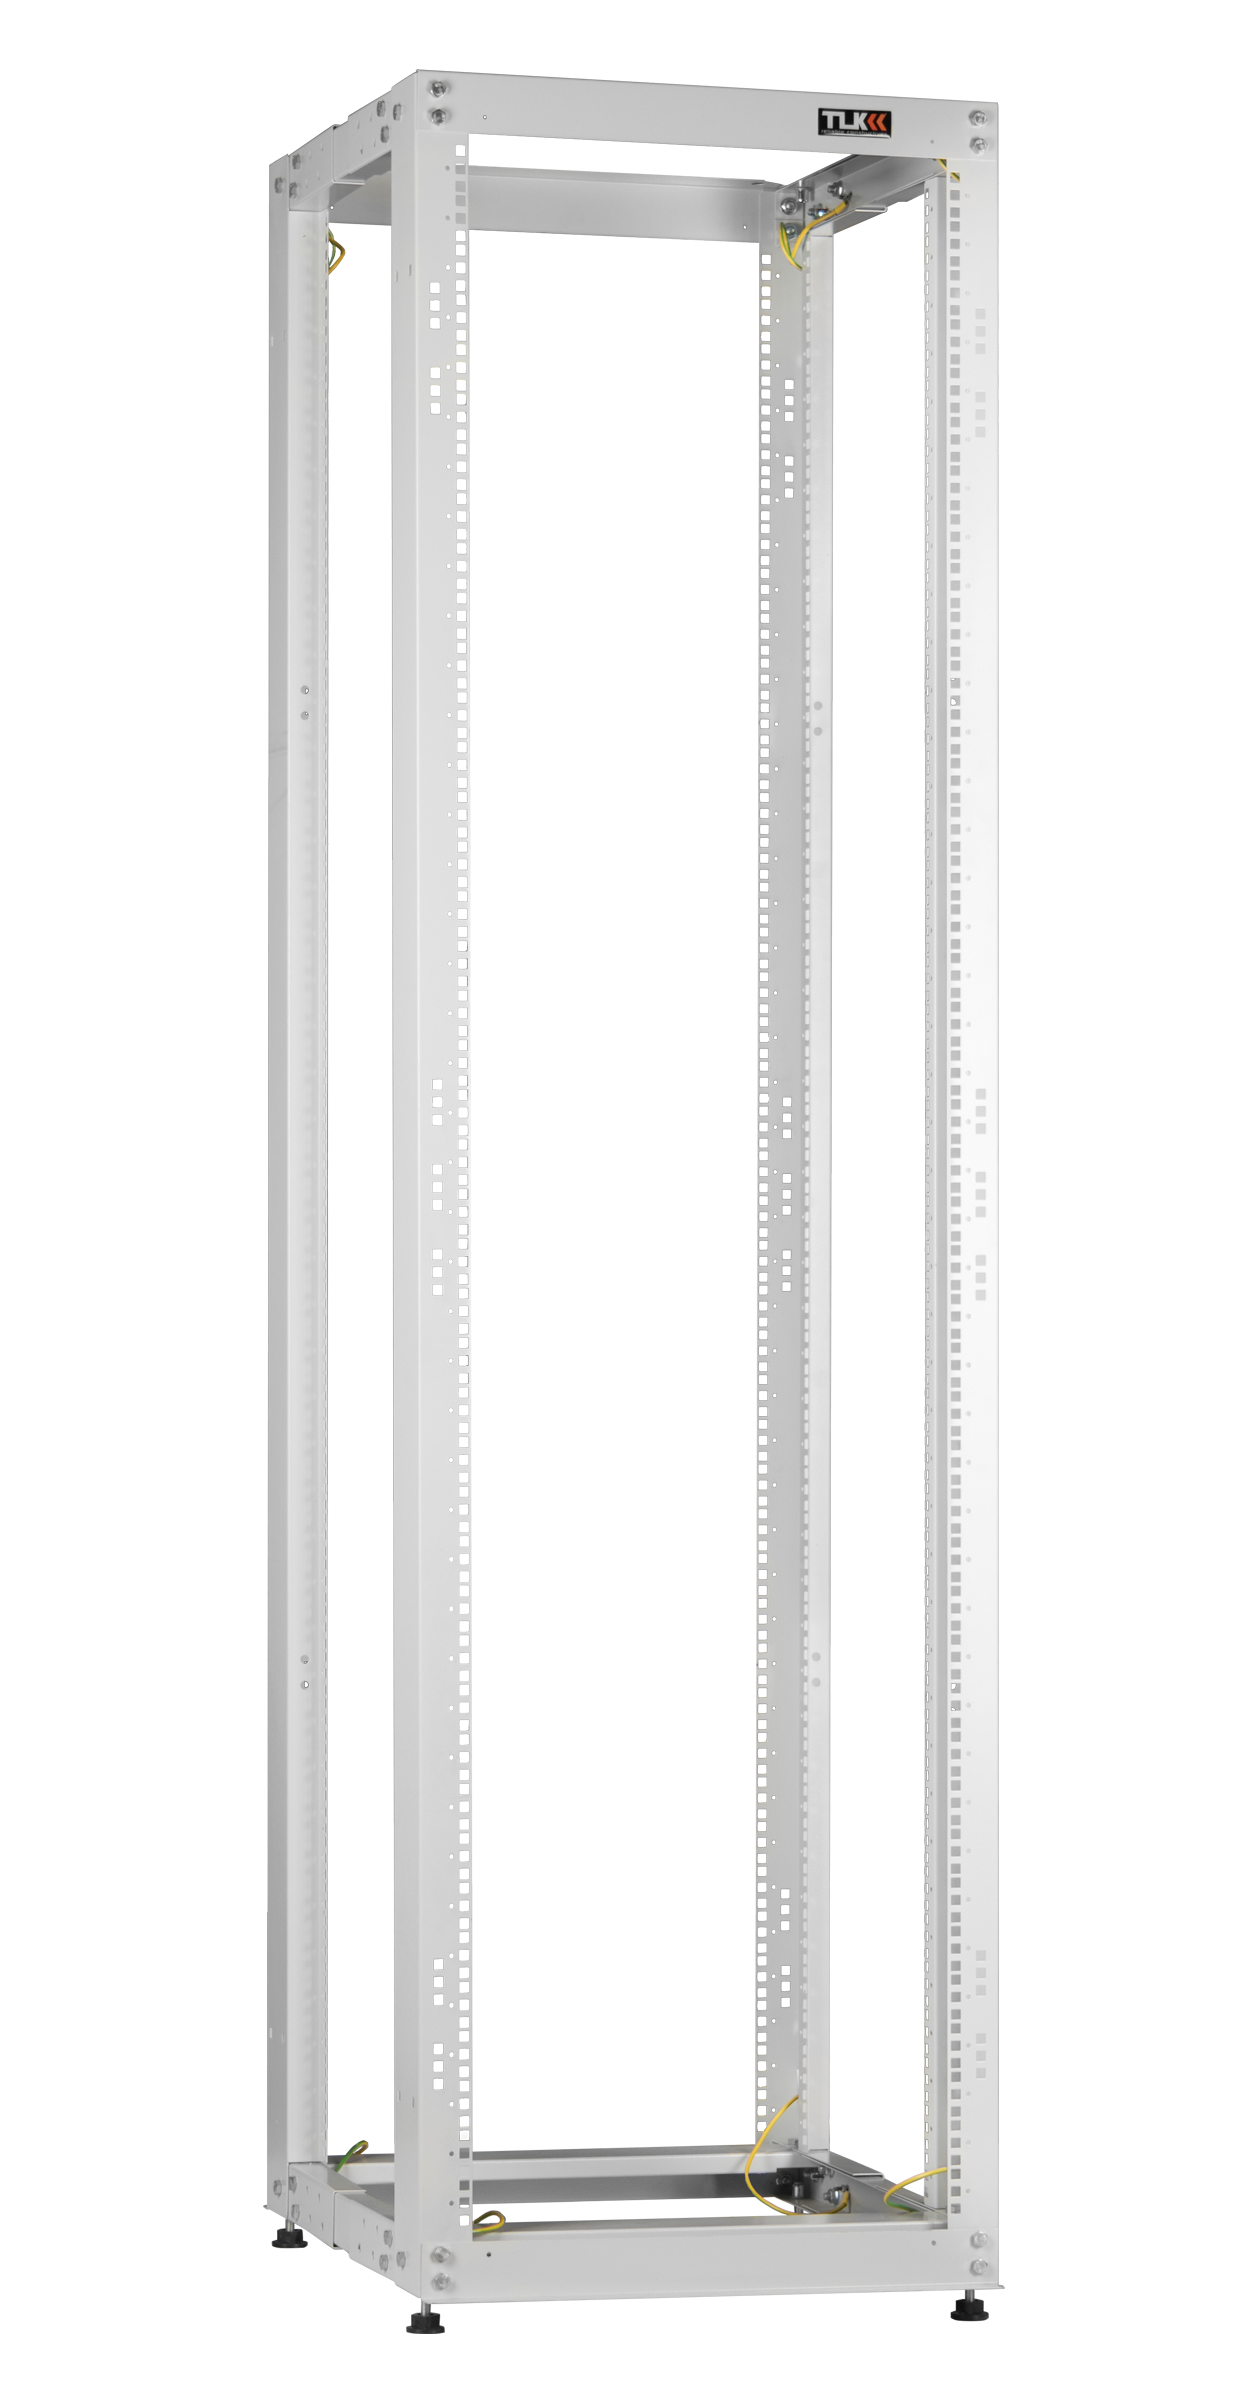 Монтажная стойка TLK двухрамная раздвижная 19", 47U, Ш550xВ2220xГ(600 -1000) мм, шаг регулировки глубины 50мм, в разобранном виде, серый (TRK-475510-R-GY)